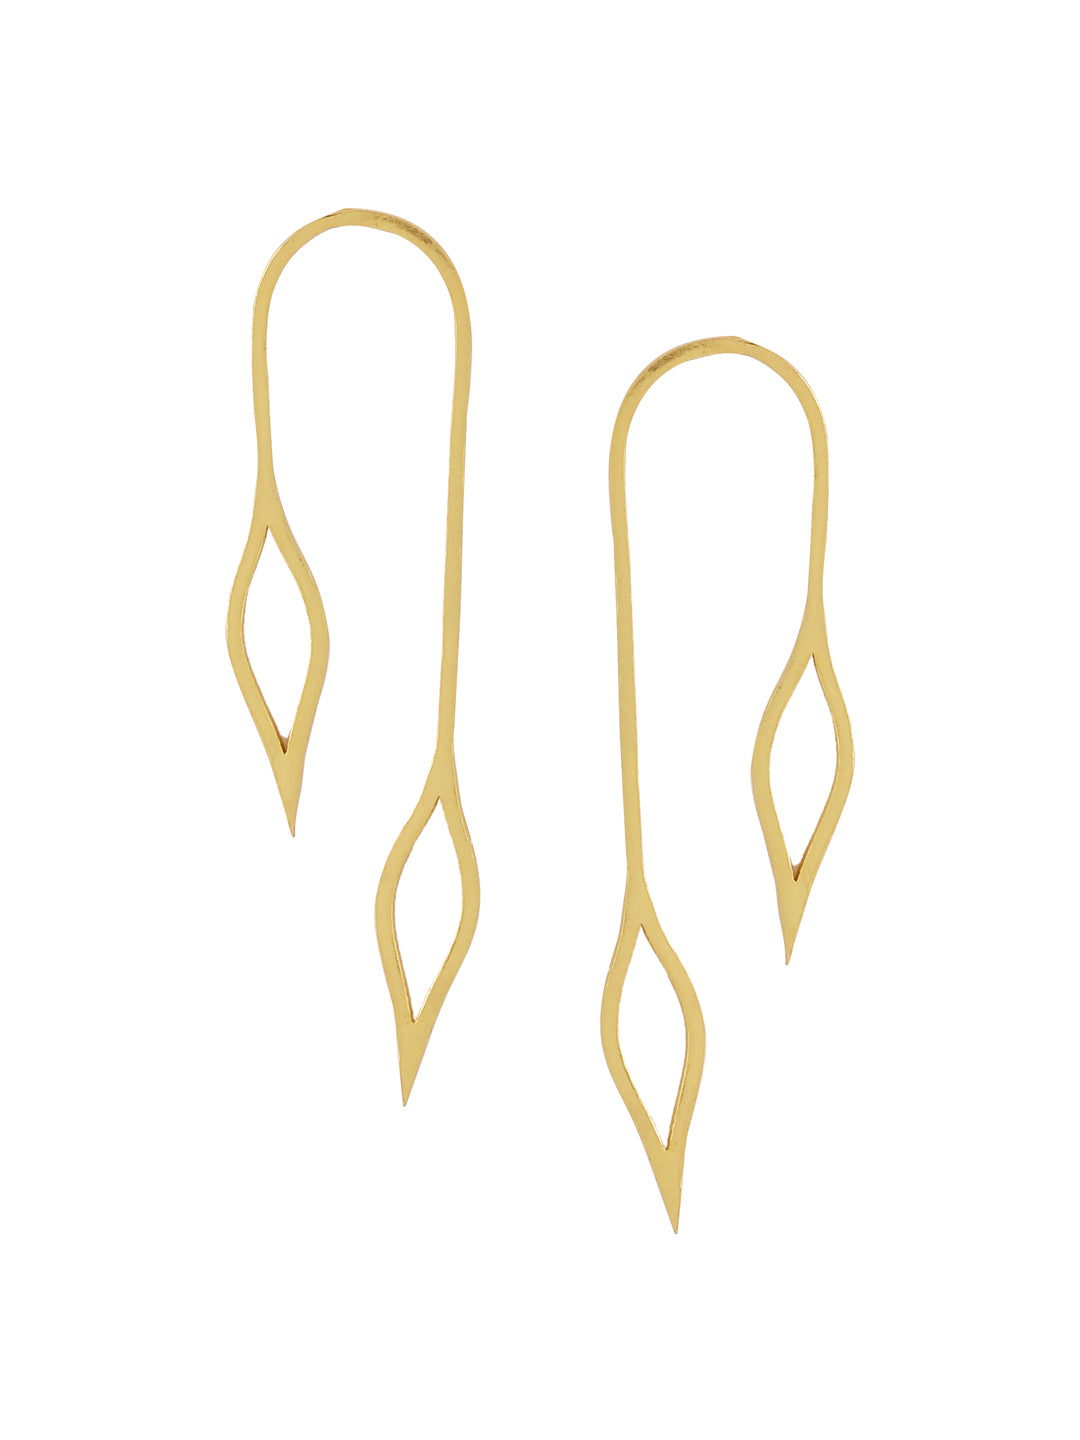 Foliage Earrings - Golden